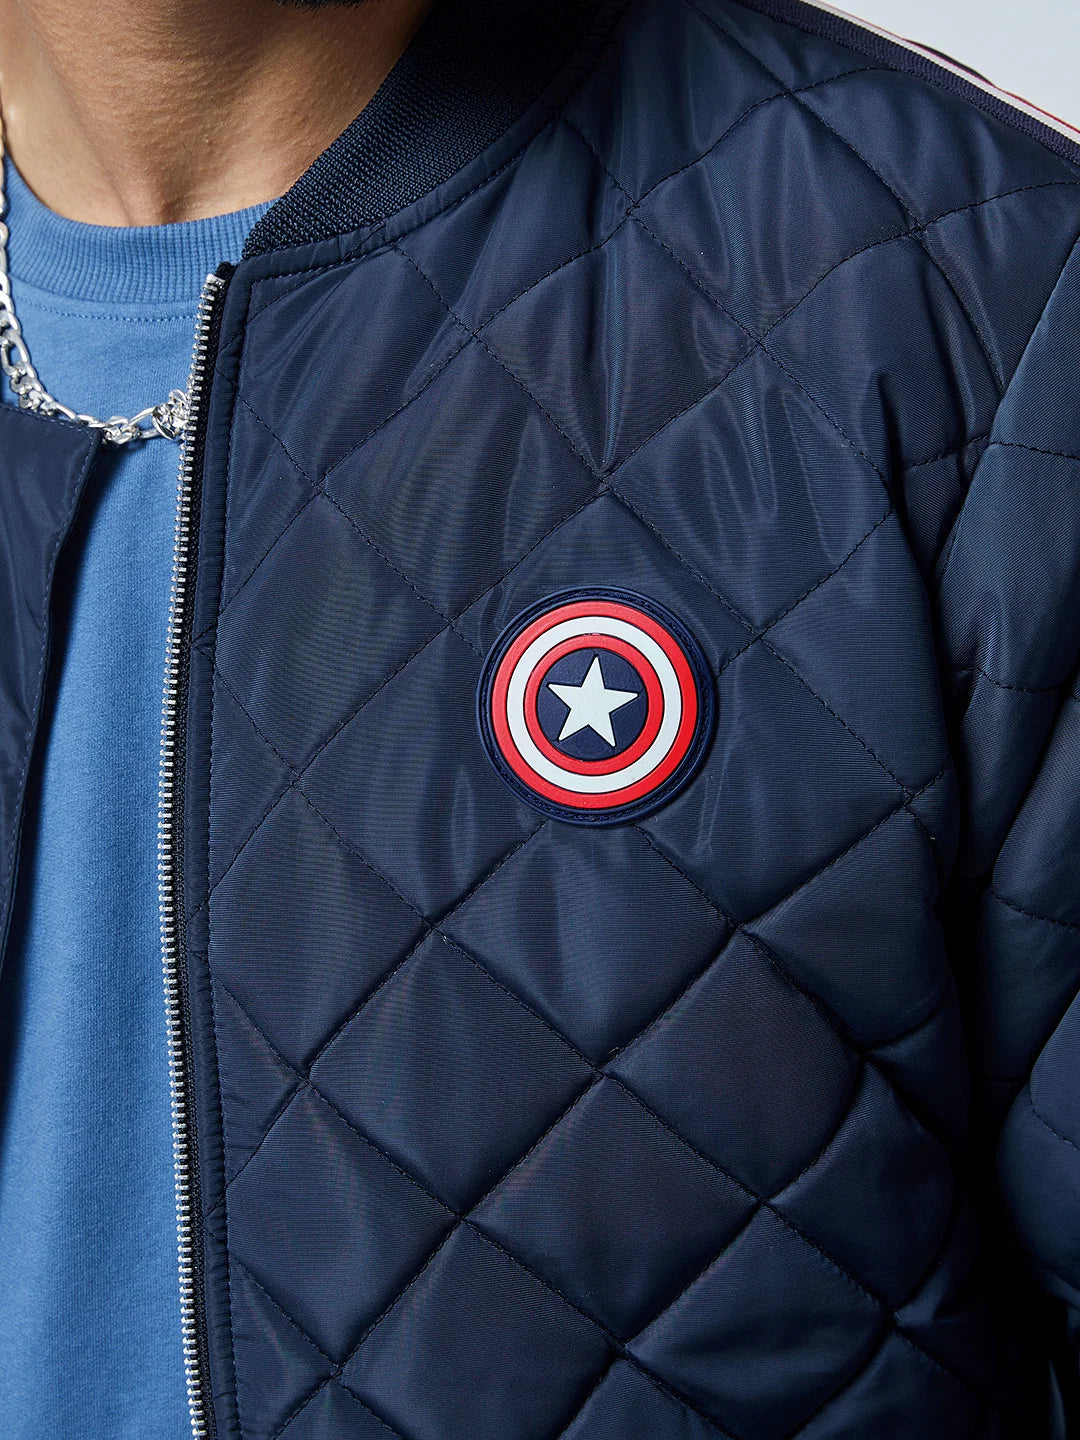 Captain America Shield (UK version)